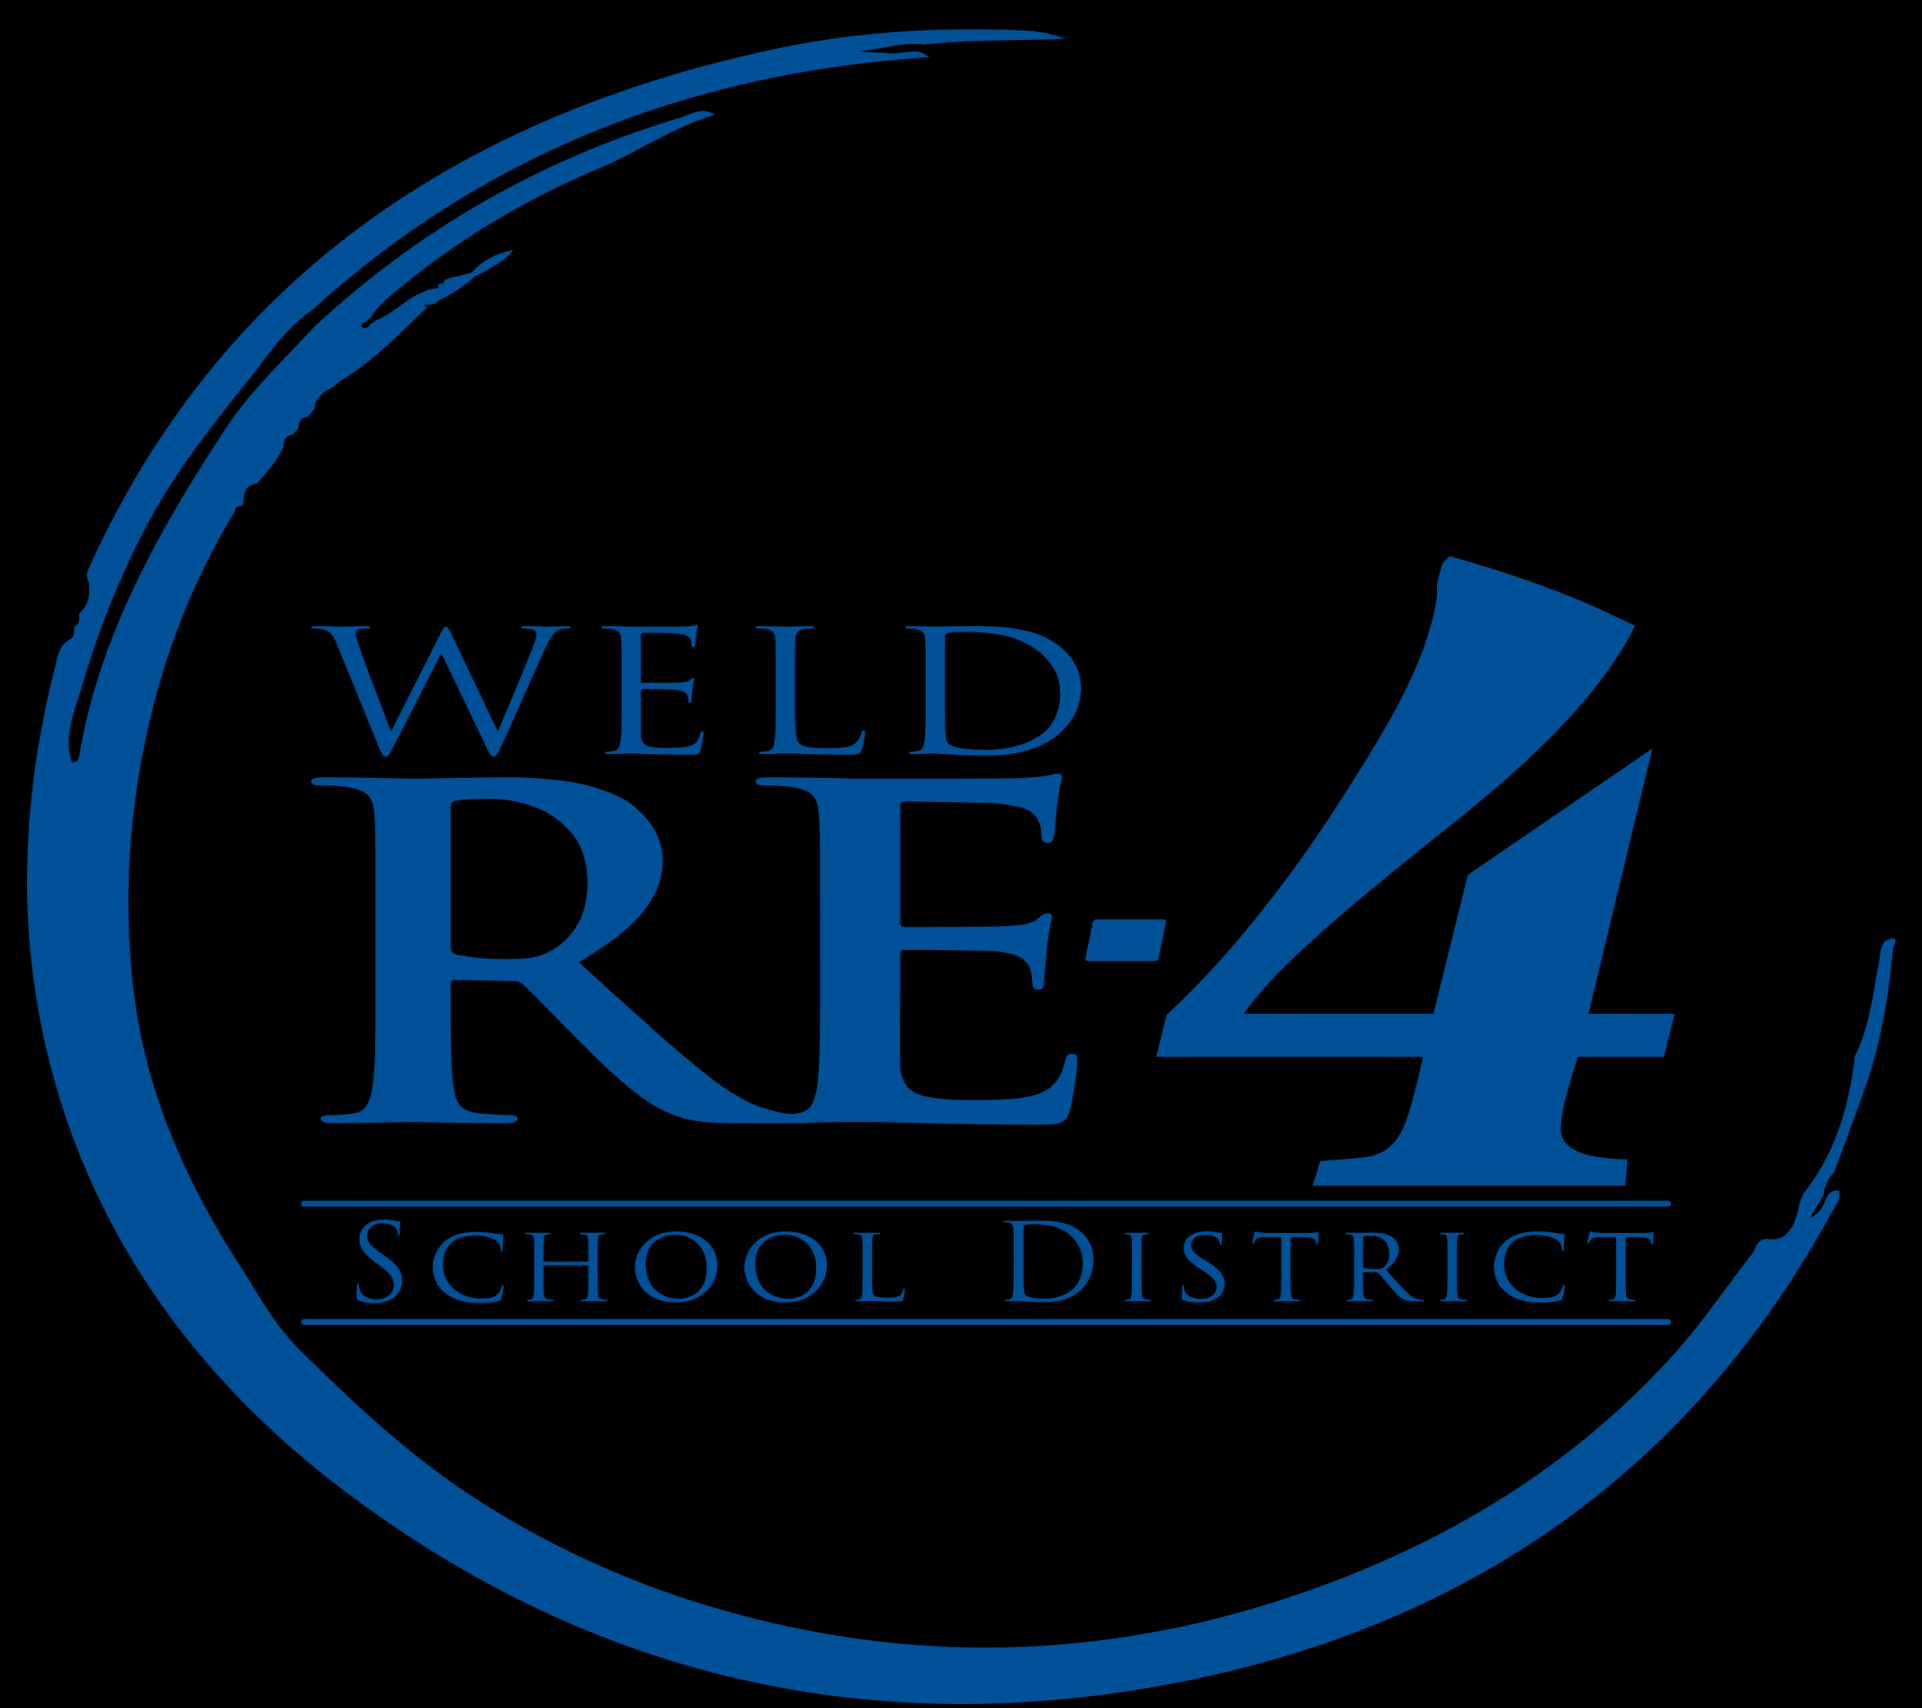 Weld RE- School District - Weld RE- School District